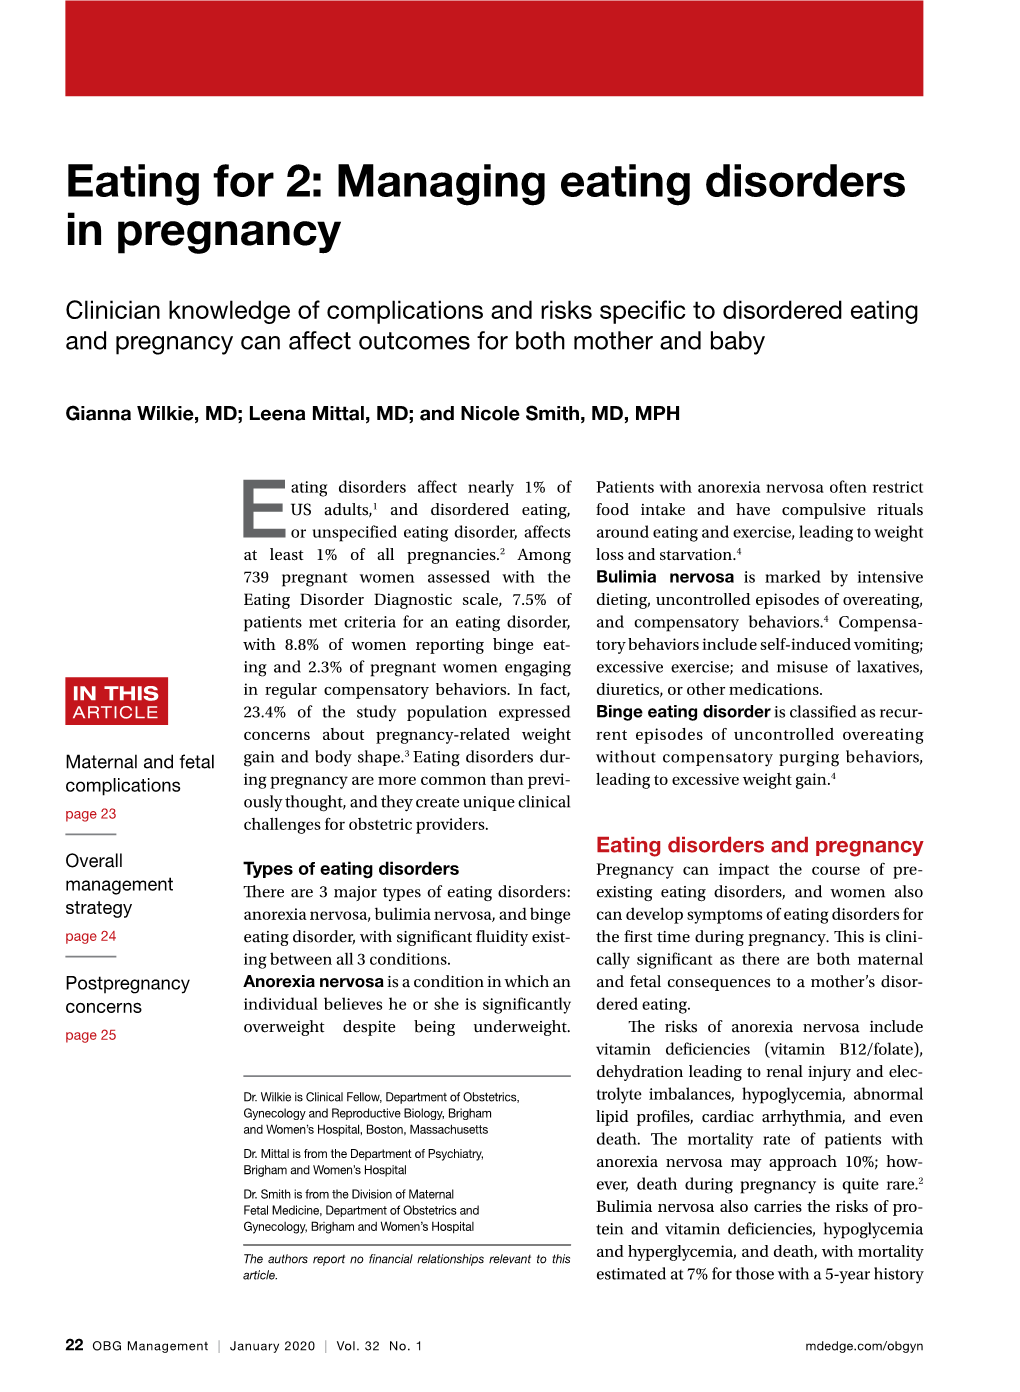 Managing Eating Disorders in Pregnancy